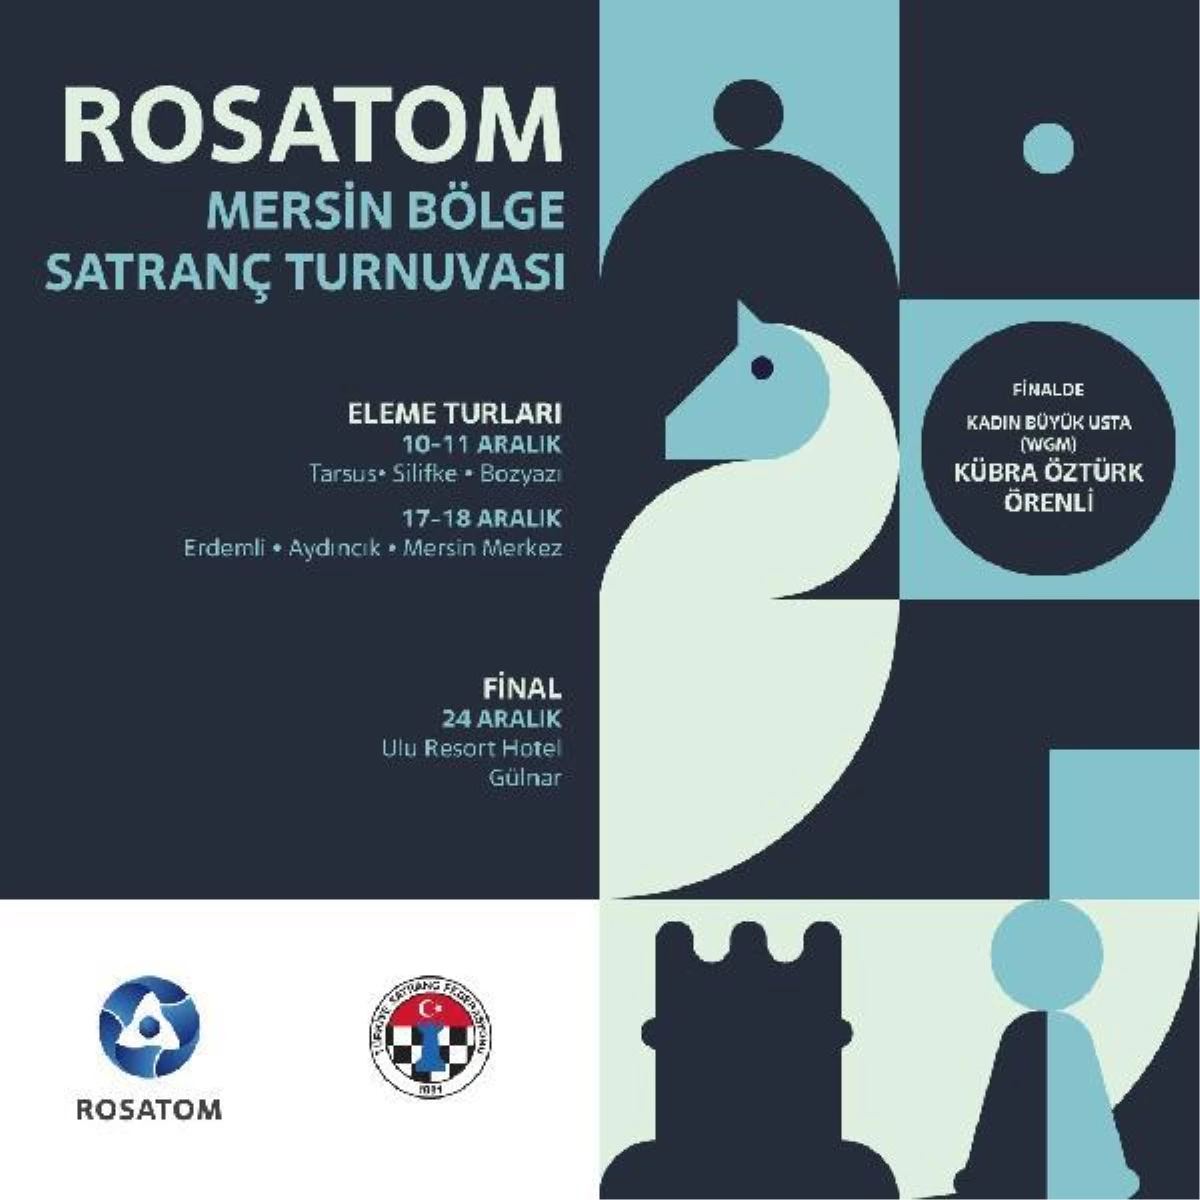 Rosatom Mersin Bölge Satranç Turnuvası başladı